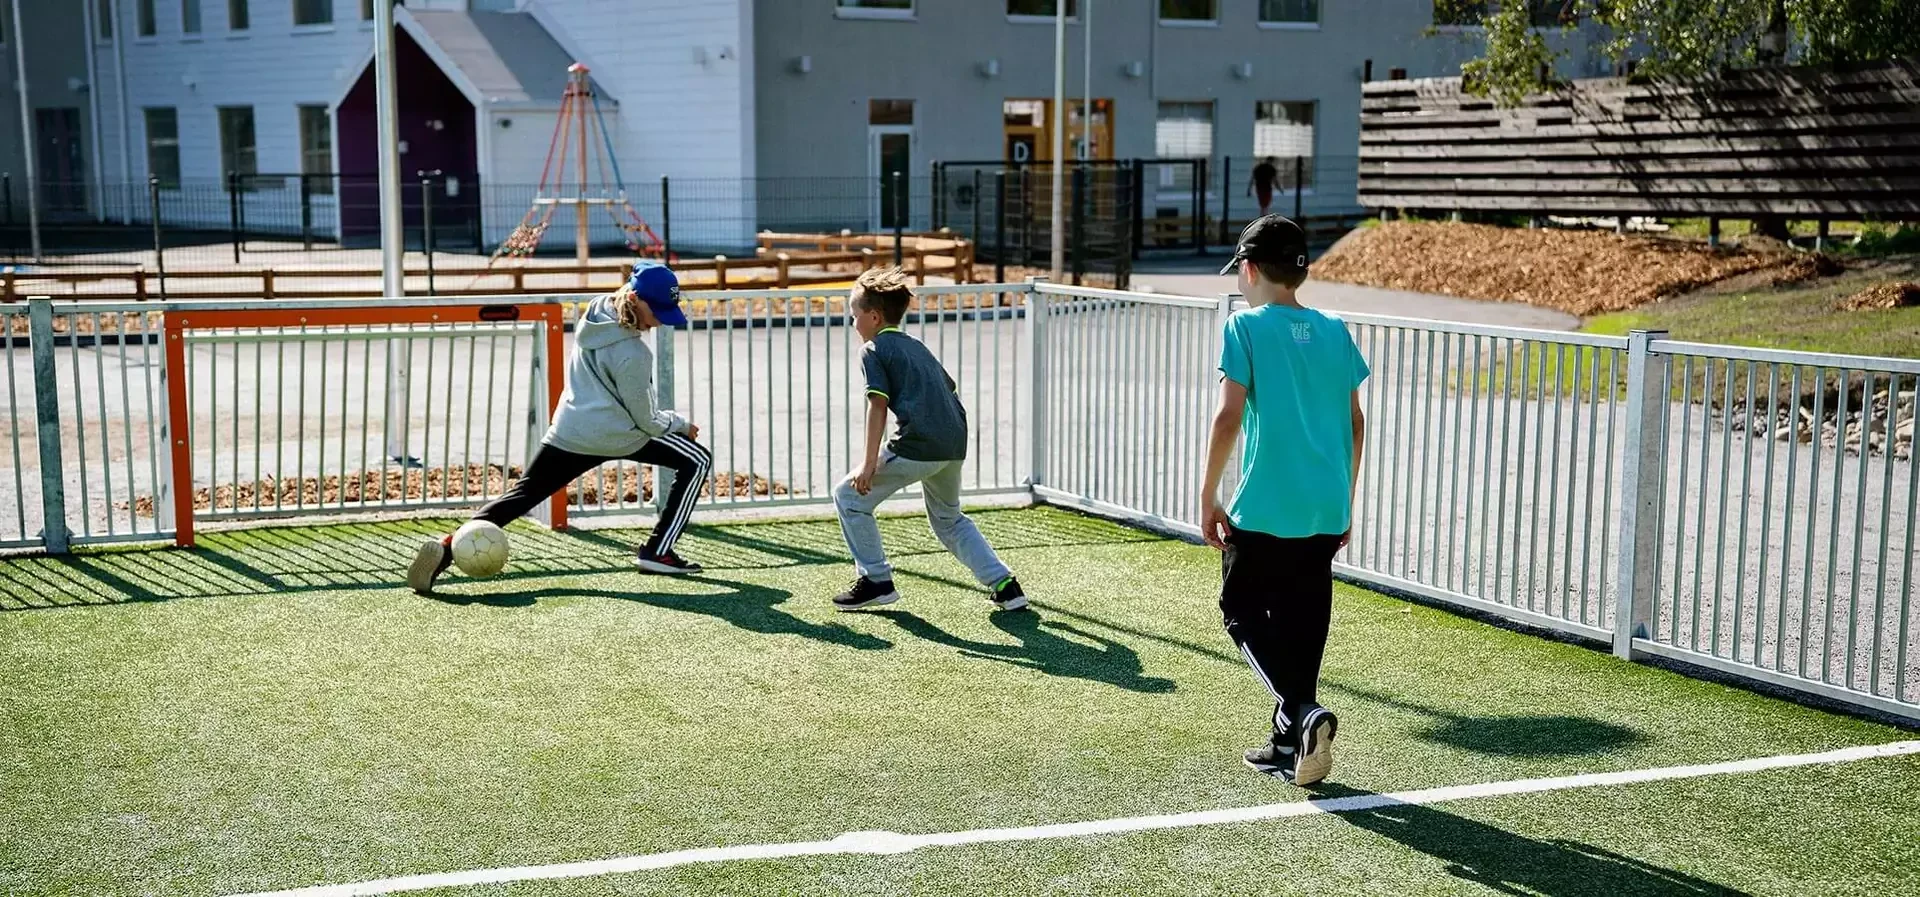 kinderen trainen voetbal op een outdoor multifunctioneel speelterrein reference afbeelding